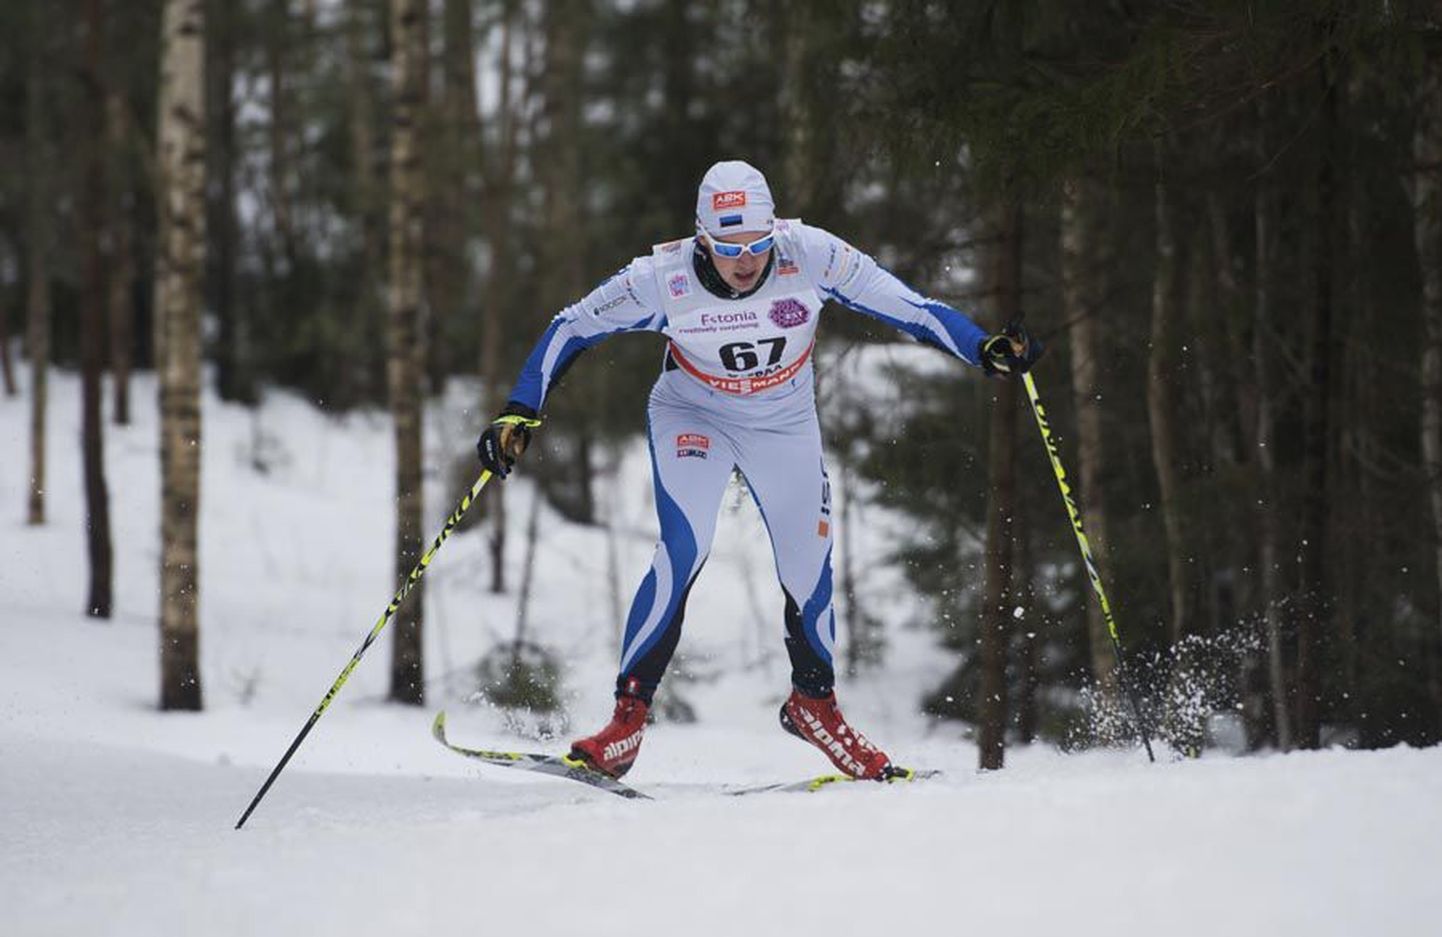 Viljandimaalt pärit Martin Nassar sai Eesti pikamaasuusatamise sarja «Estoloppet» 19. hooaja üldvõidu.